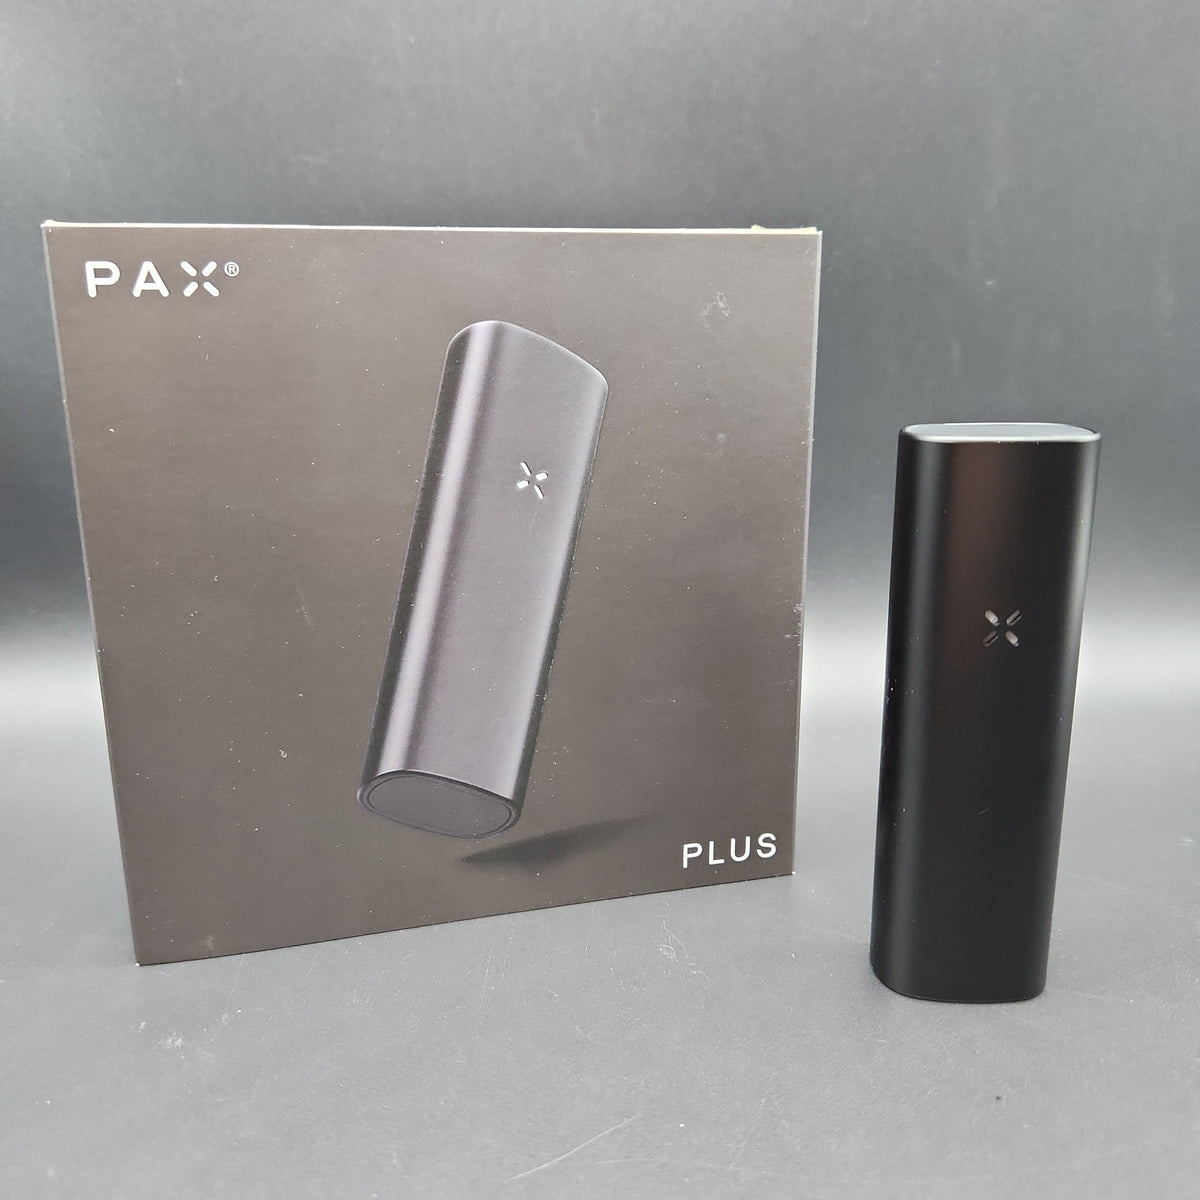 Pax Plus Dual Use Vaporizer Kit